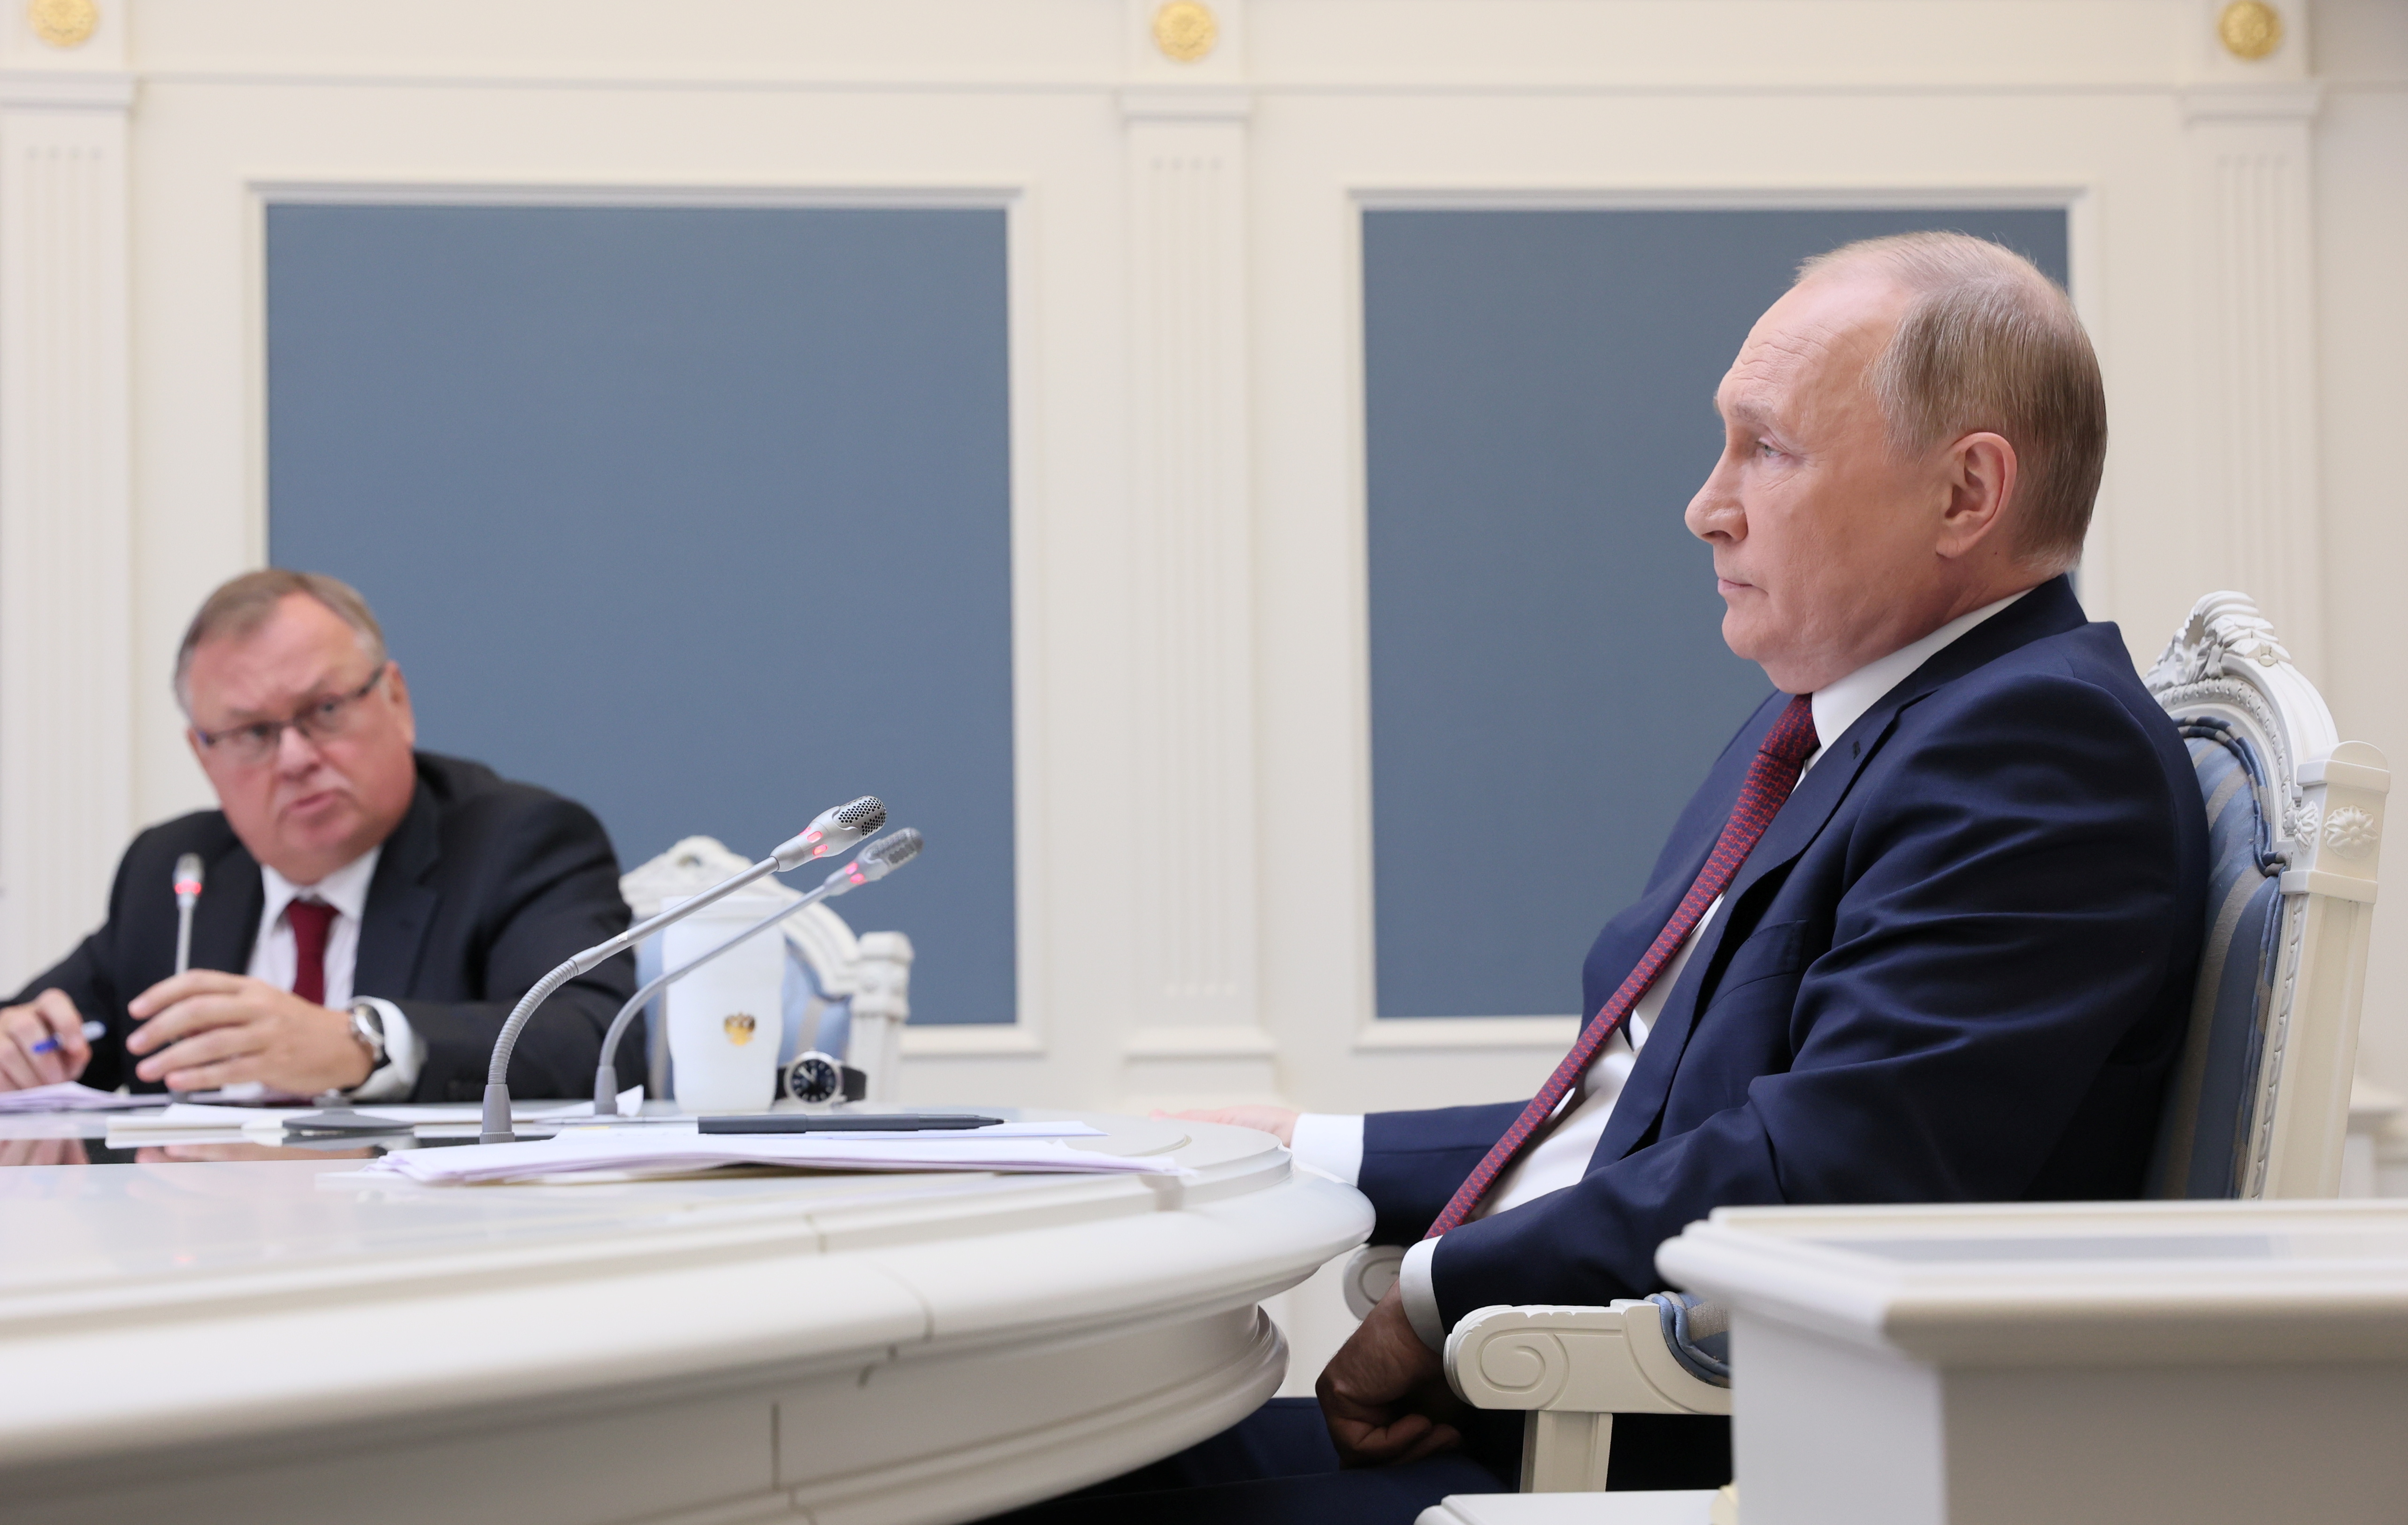 Venemaa president Vladimir Putin ja VTB panga tegevjuht Andrei Kostin osalevad VTB kapitaliinvesteeringute foorumi "Venemaa kutsub!" videokonverentskõne kaudu Moskvas, Venemaal 30. novembril 2021. Sputnik/Mihhail Metzel/Pool REUTERSi kaudu